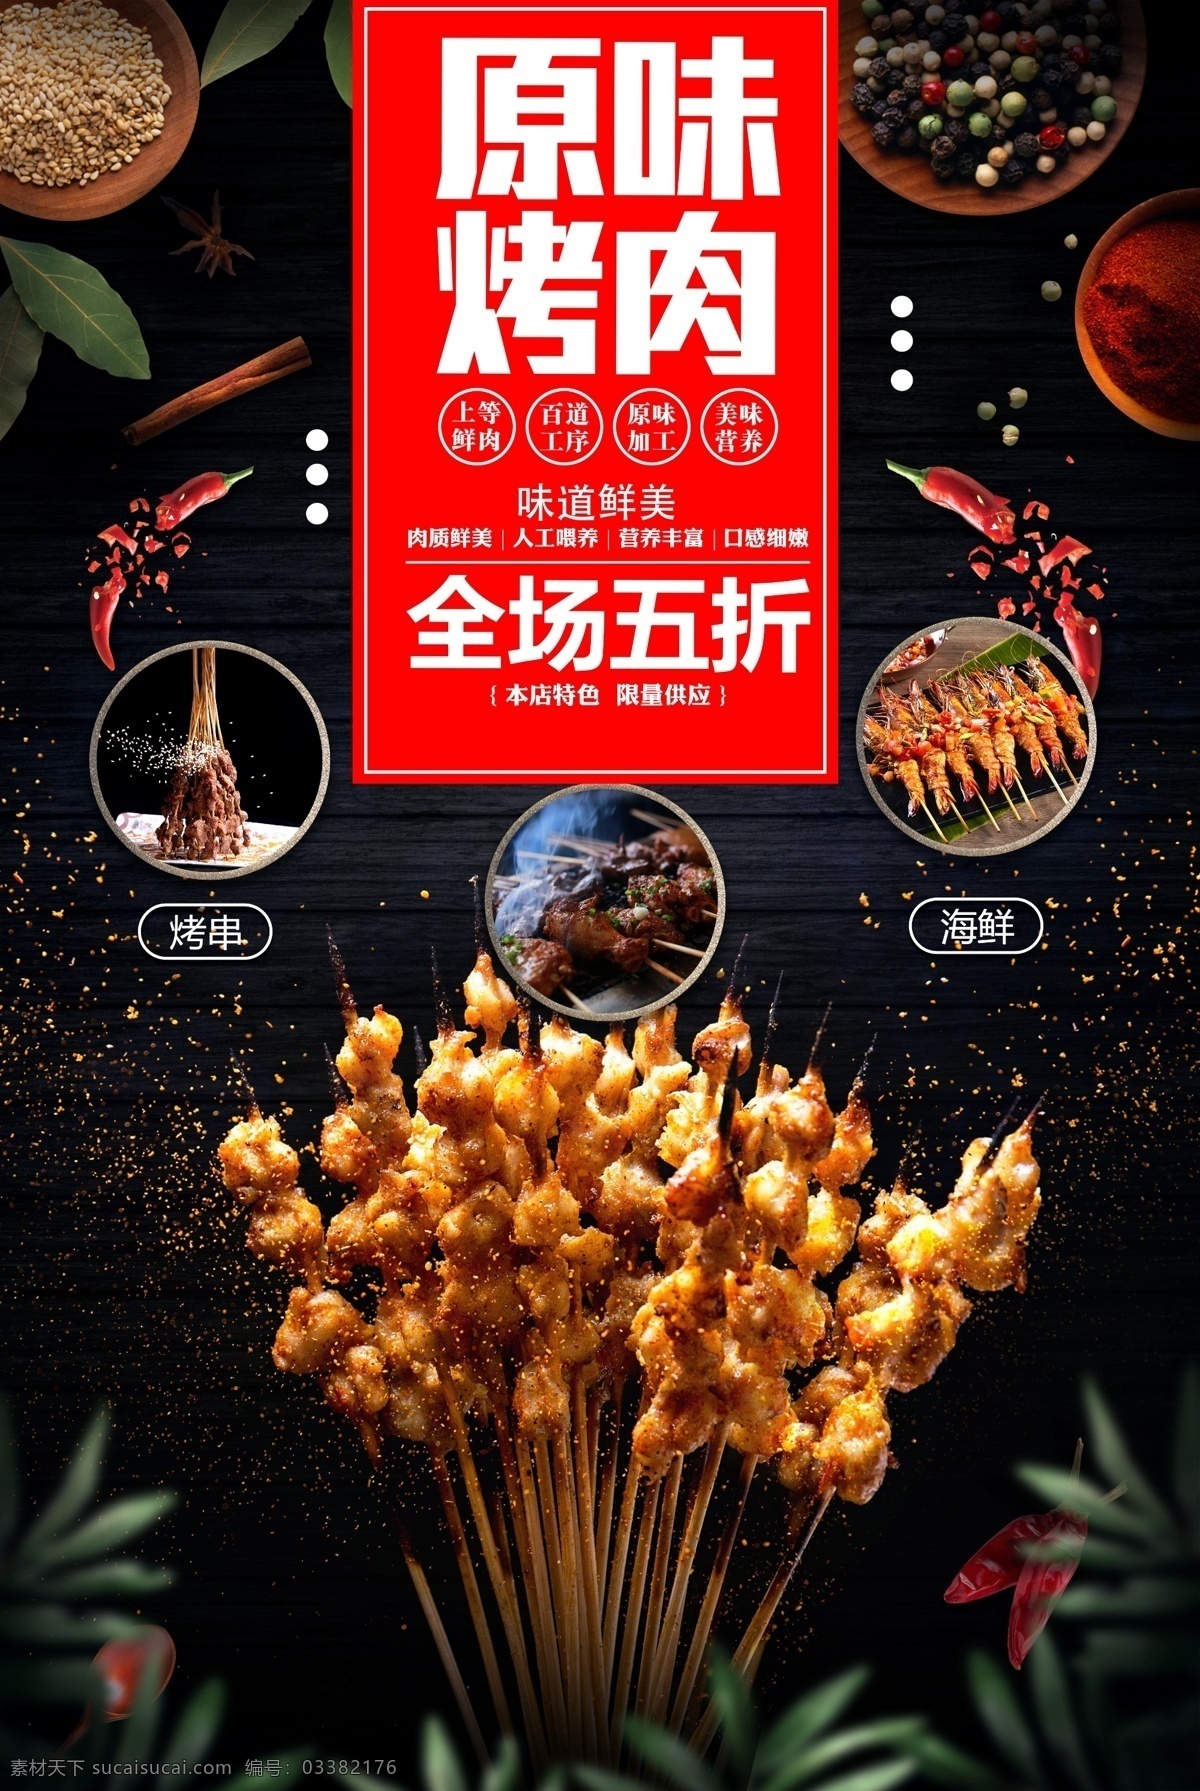 创意 原味 烤肉 宣传海报 模版 简约 大气 美味 美食 海报 番茄 辣椒 感 兴趣 免费